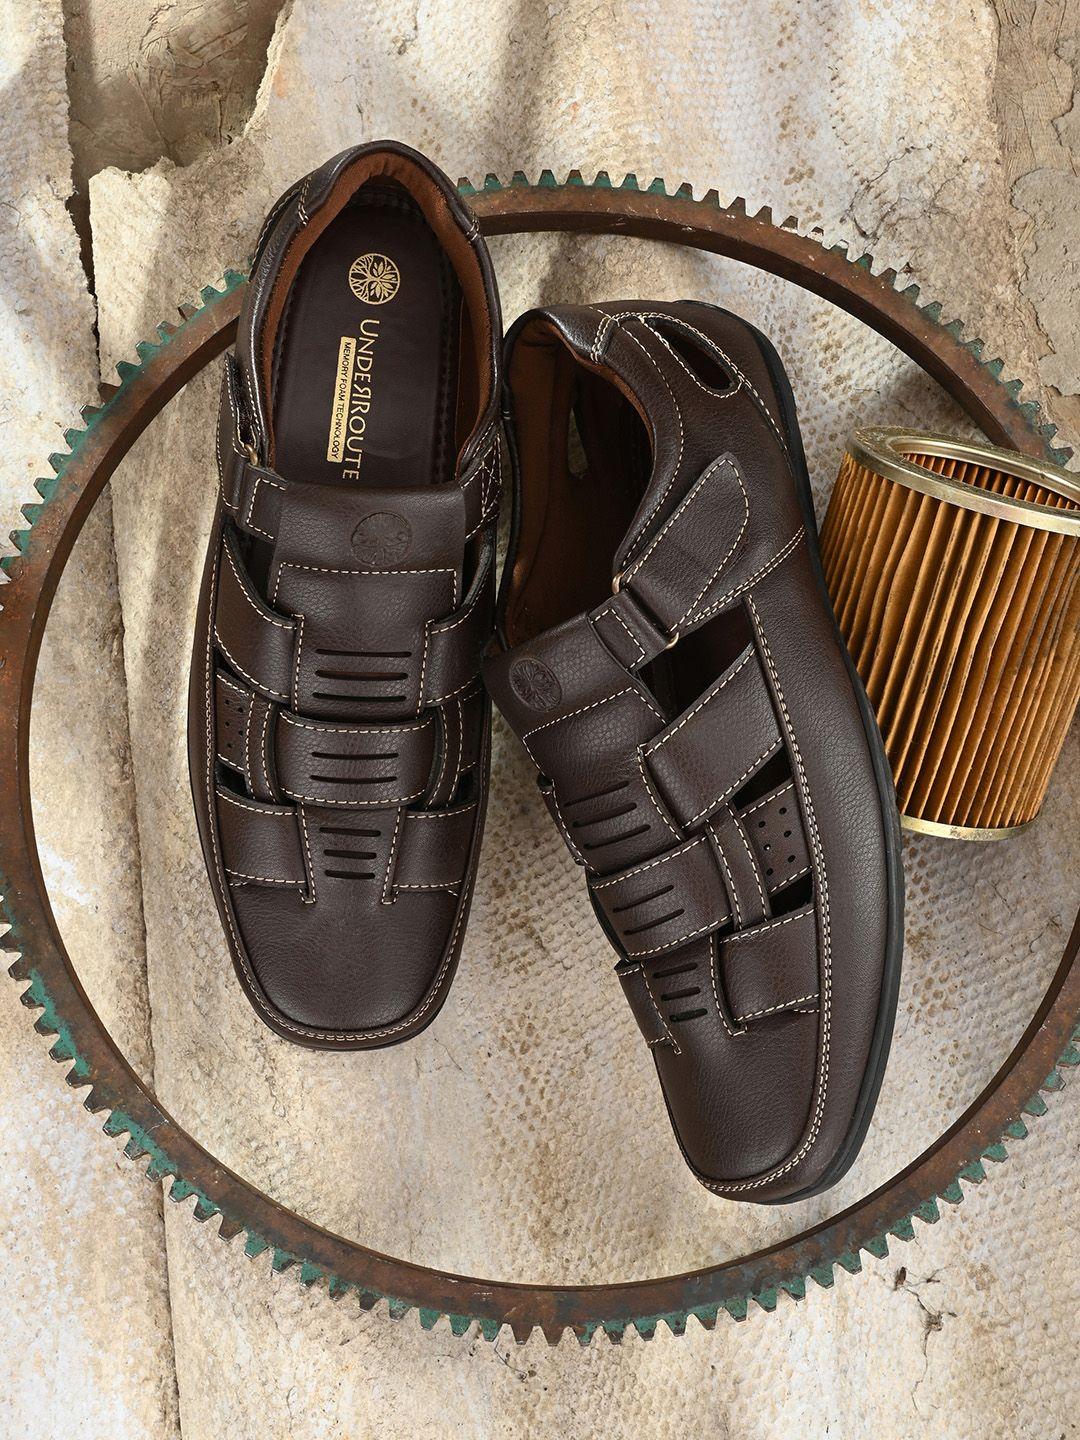 underroute-men-brown-pu-shoe-style-sandals